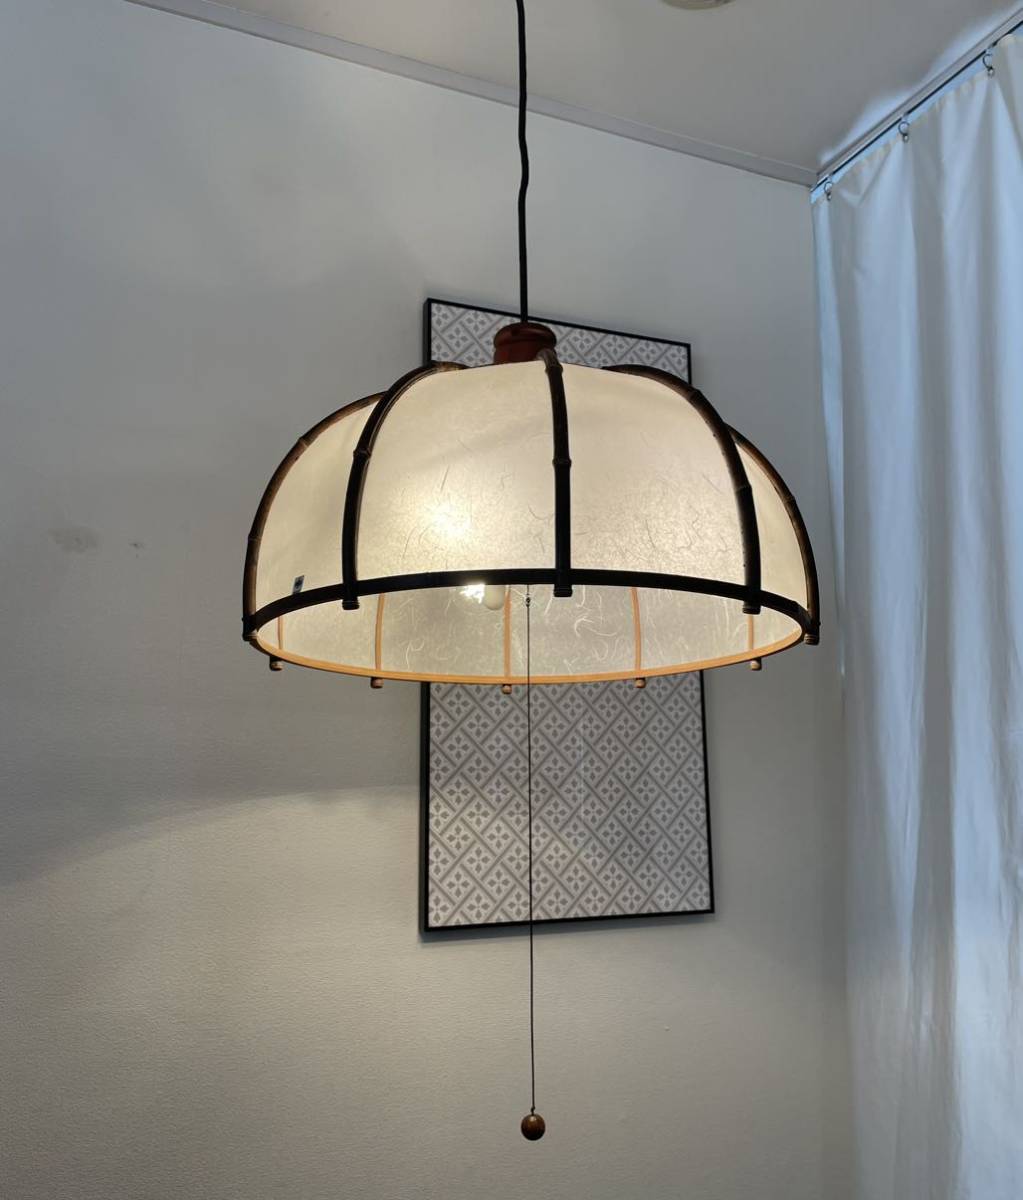 山田照明 ヴィンテージ ペンダントライト 和風 ヤマダ ランプ 天井照明 ビンテージ レトロ Yamada Vintage Lamp Japanese Style